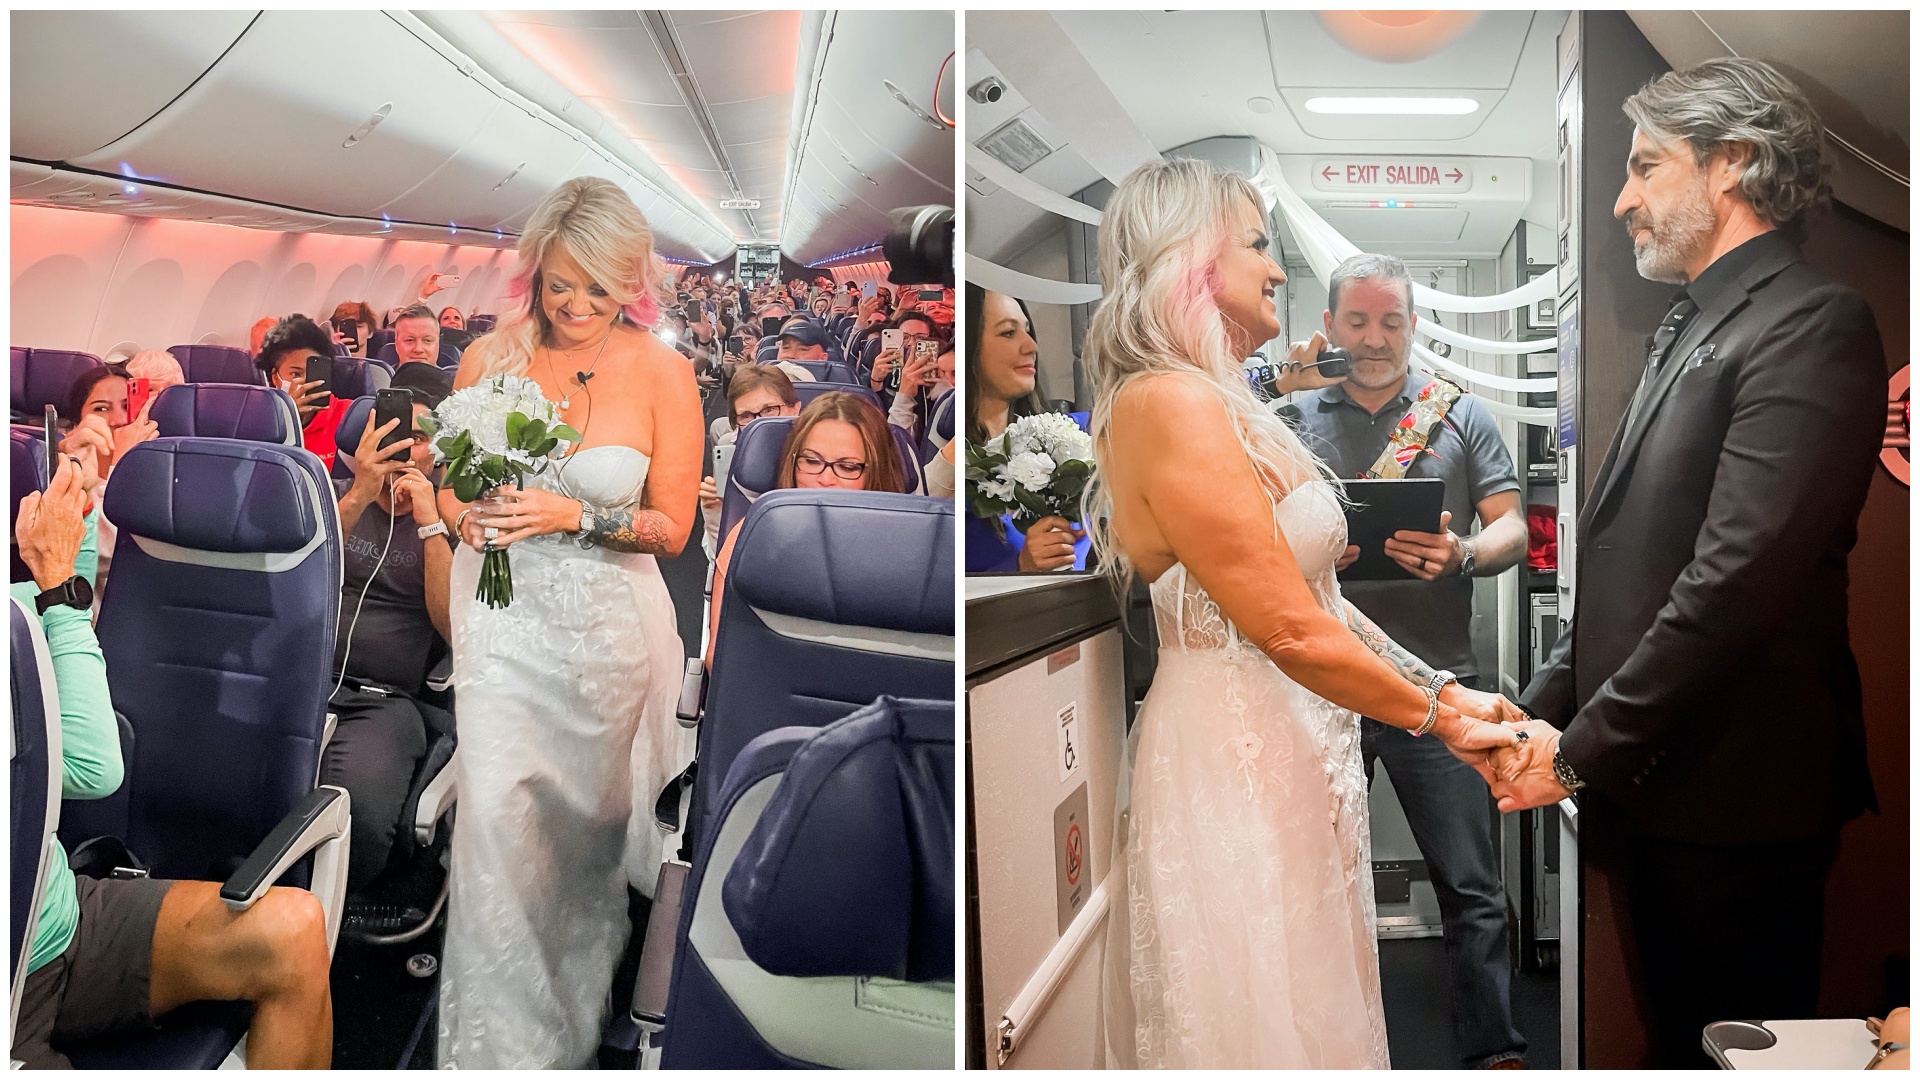 A Southwest Airlines járatán összeházasodó pár